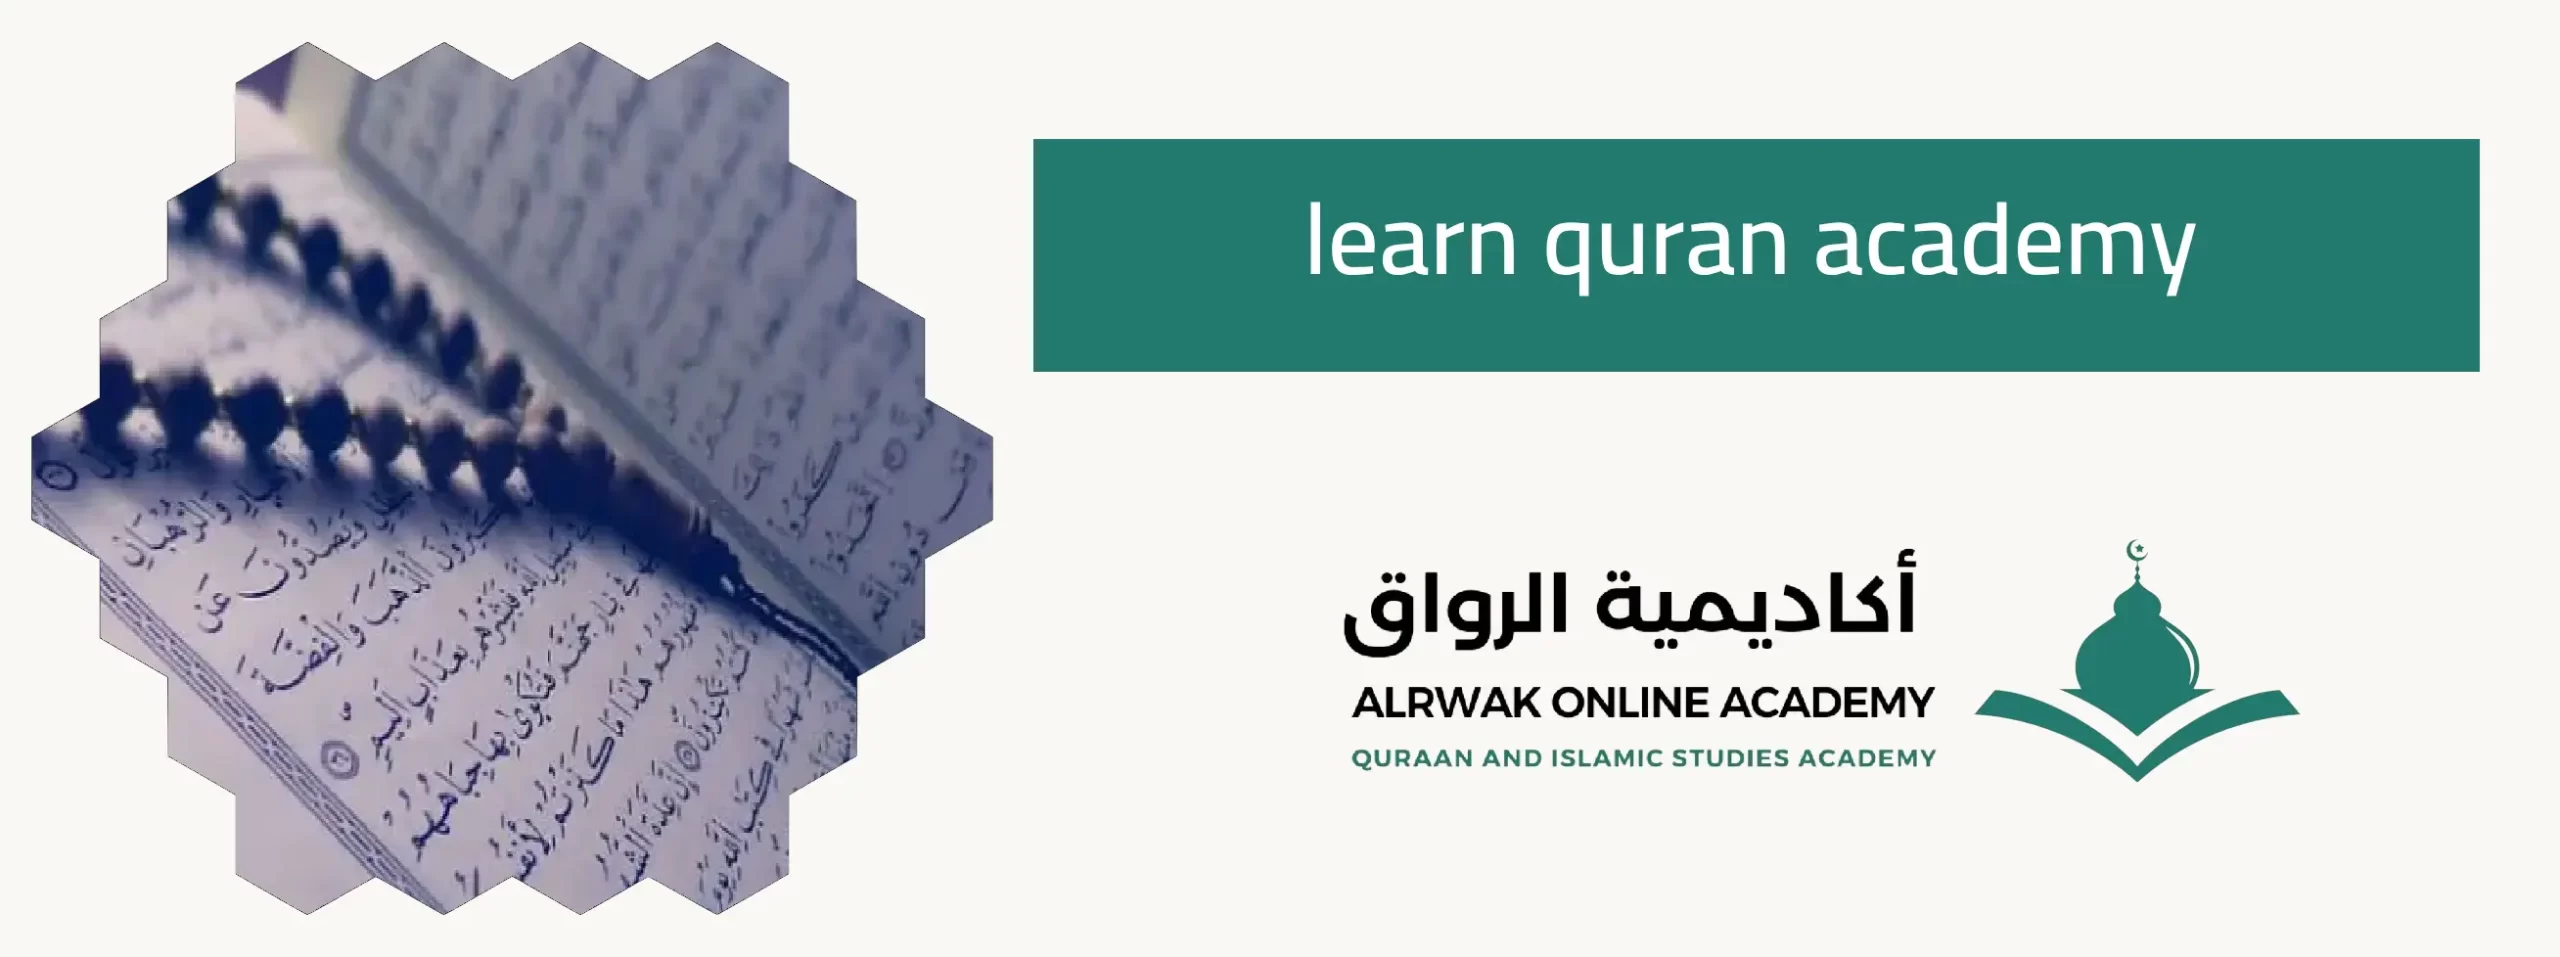 learn quran academy